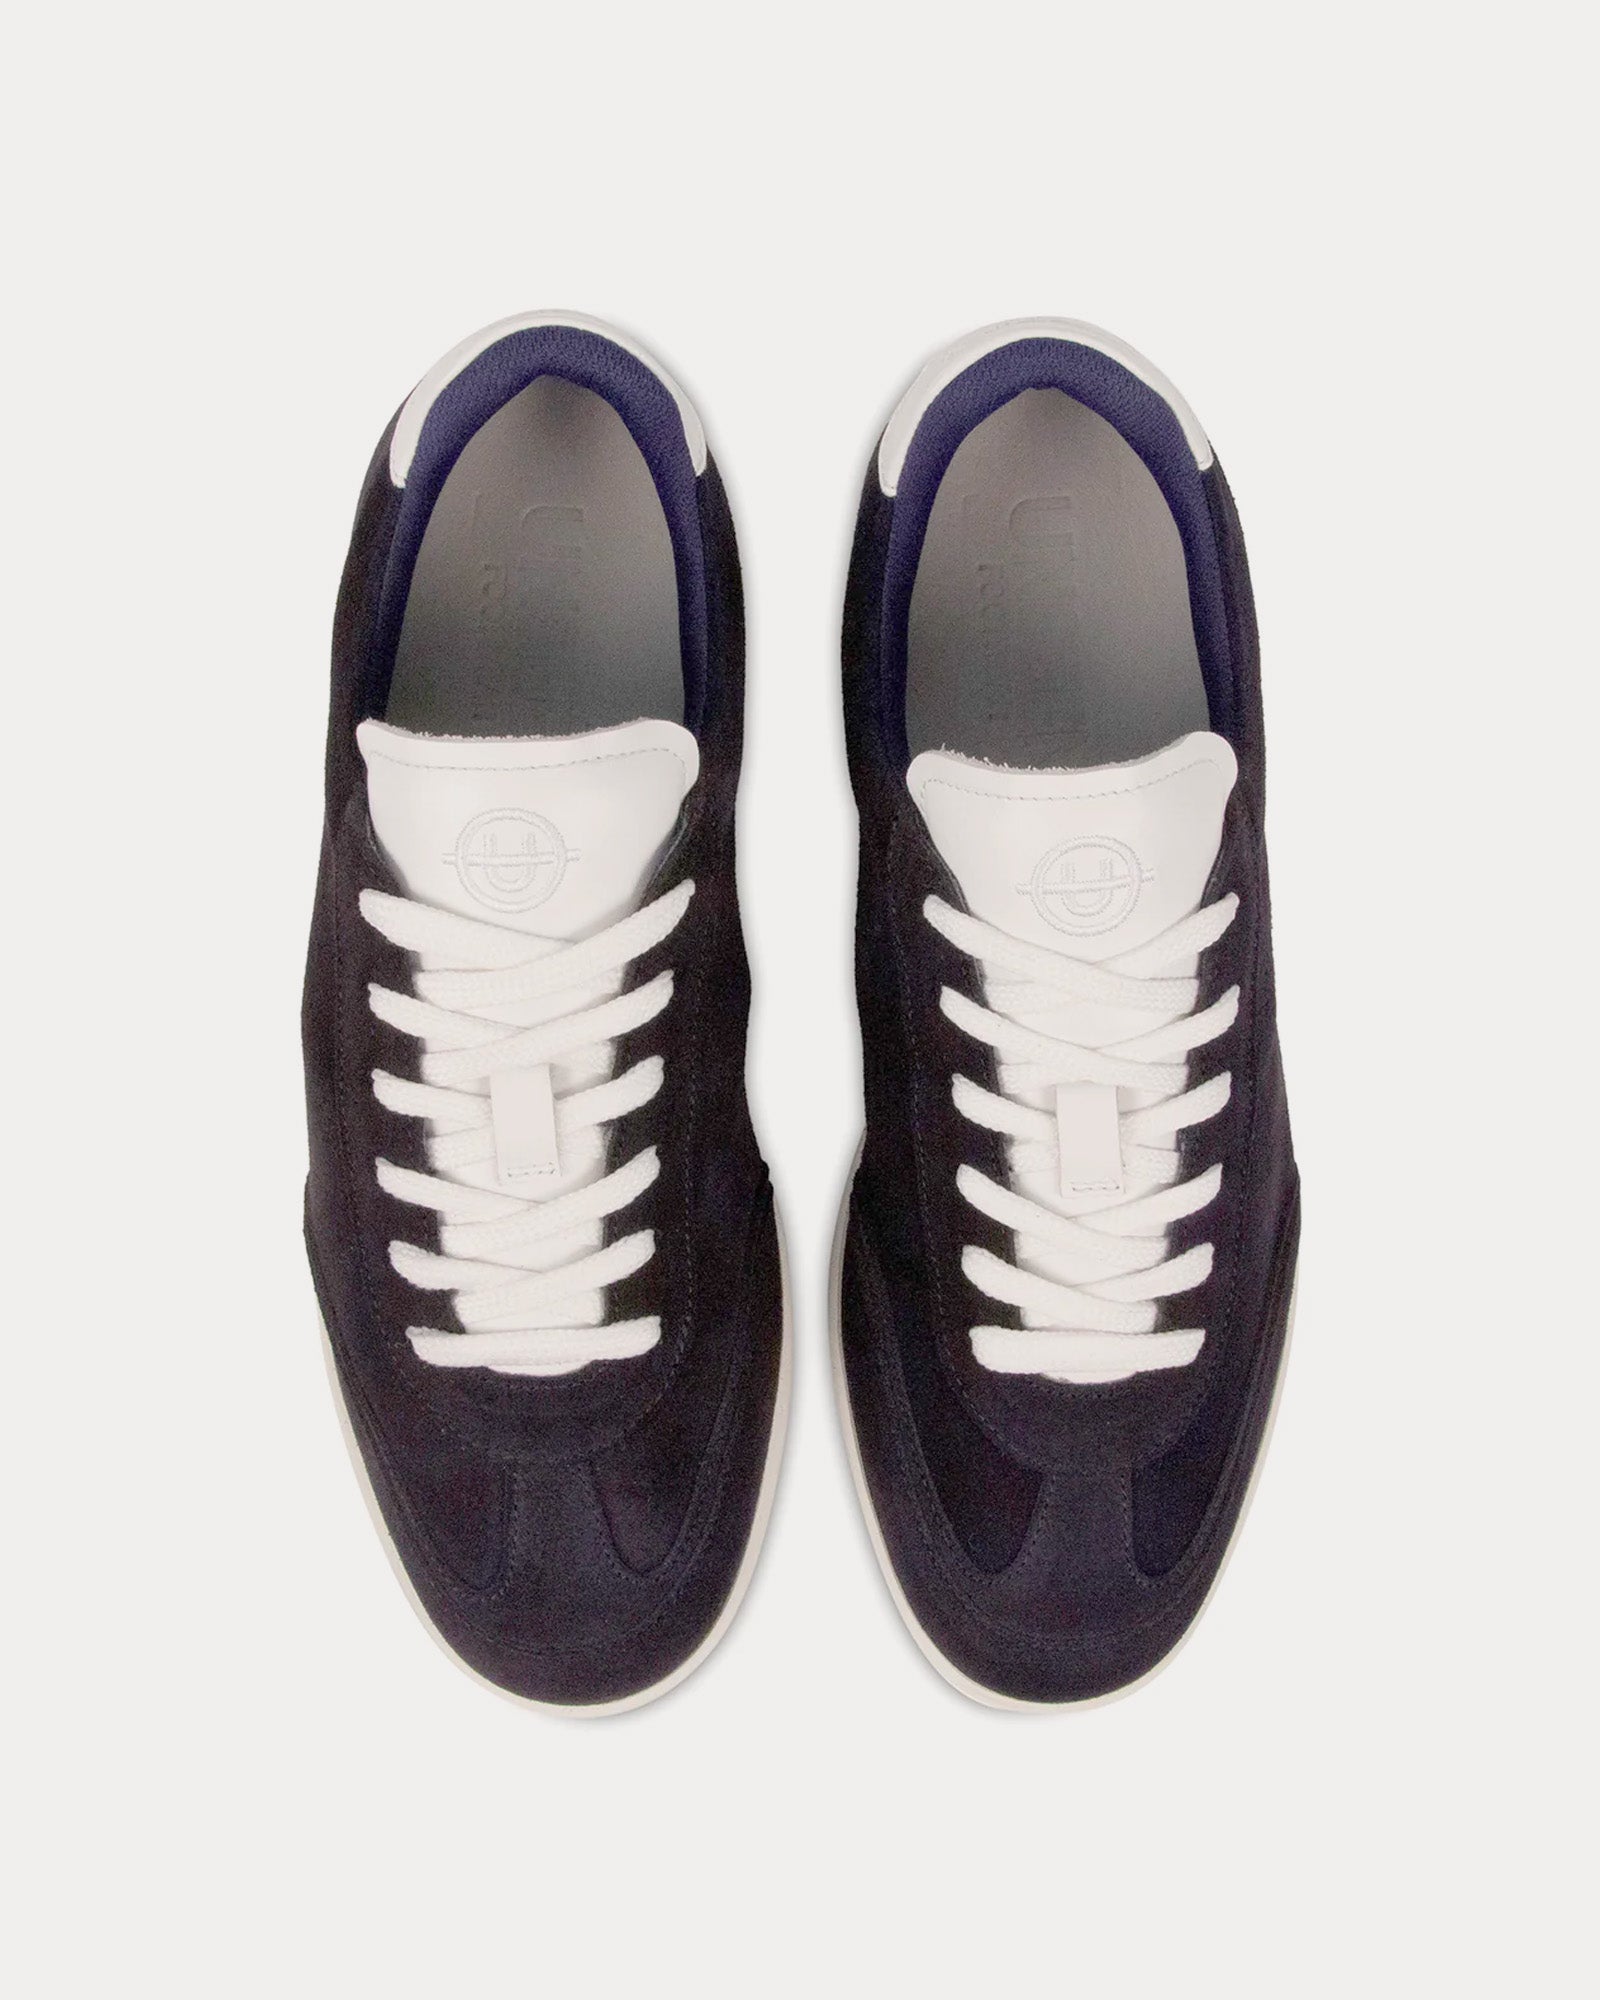 Unseen Footwear - Portelet Navy Low Top Sneakers